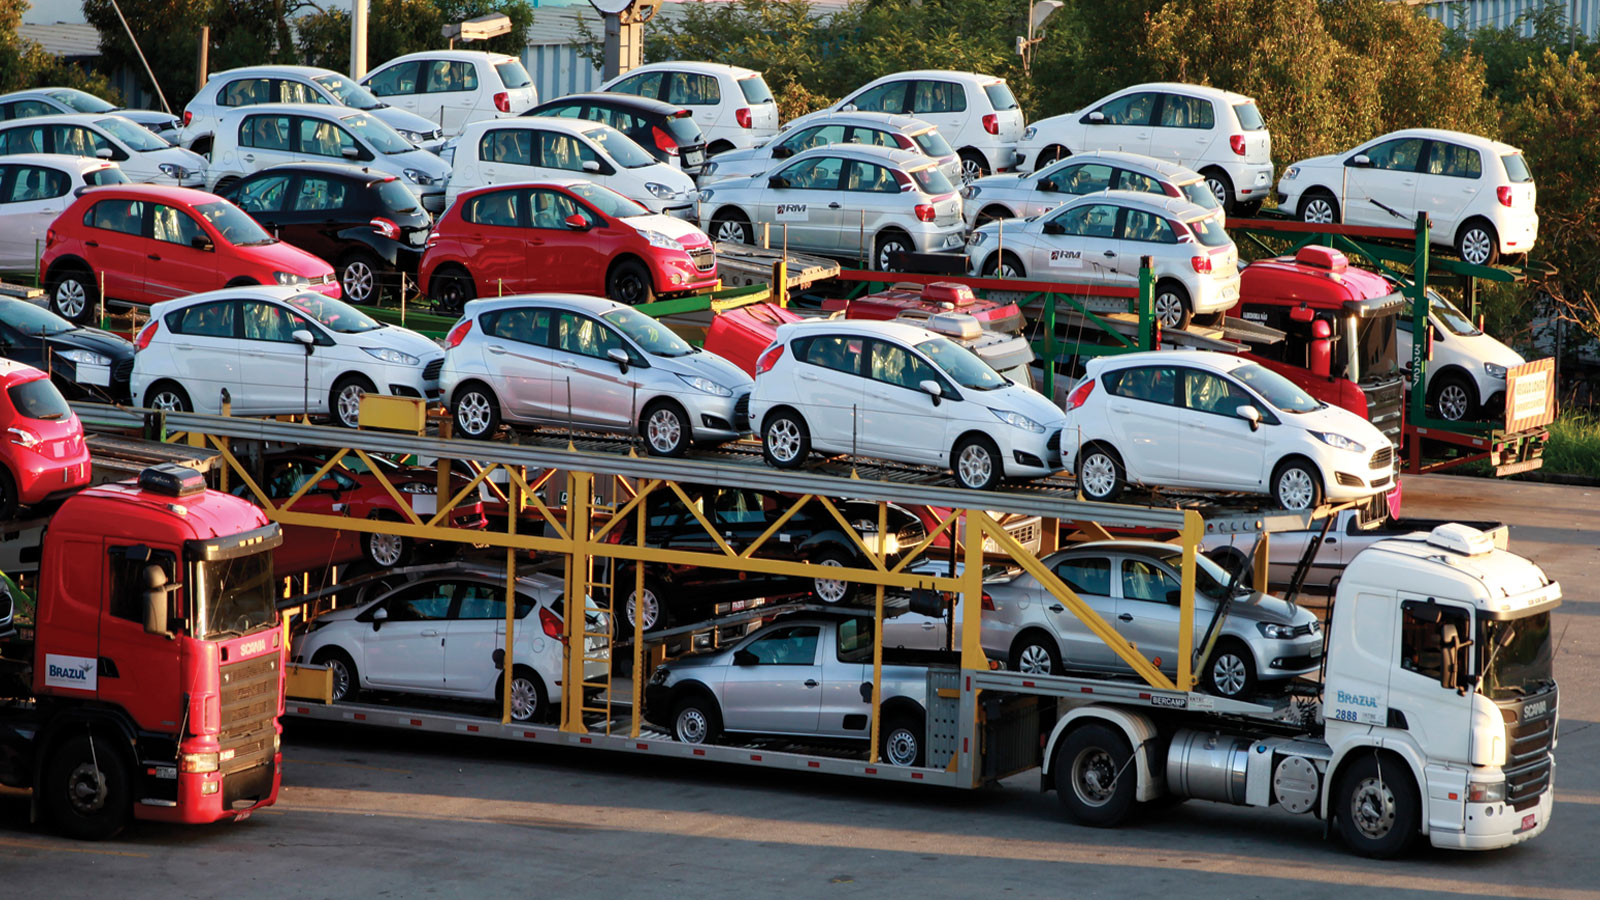 Retard de livraison des véhicules : 20 000 réclamations reçues par les services du ministère